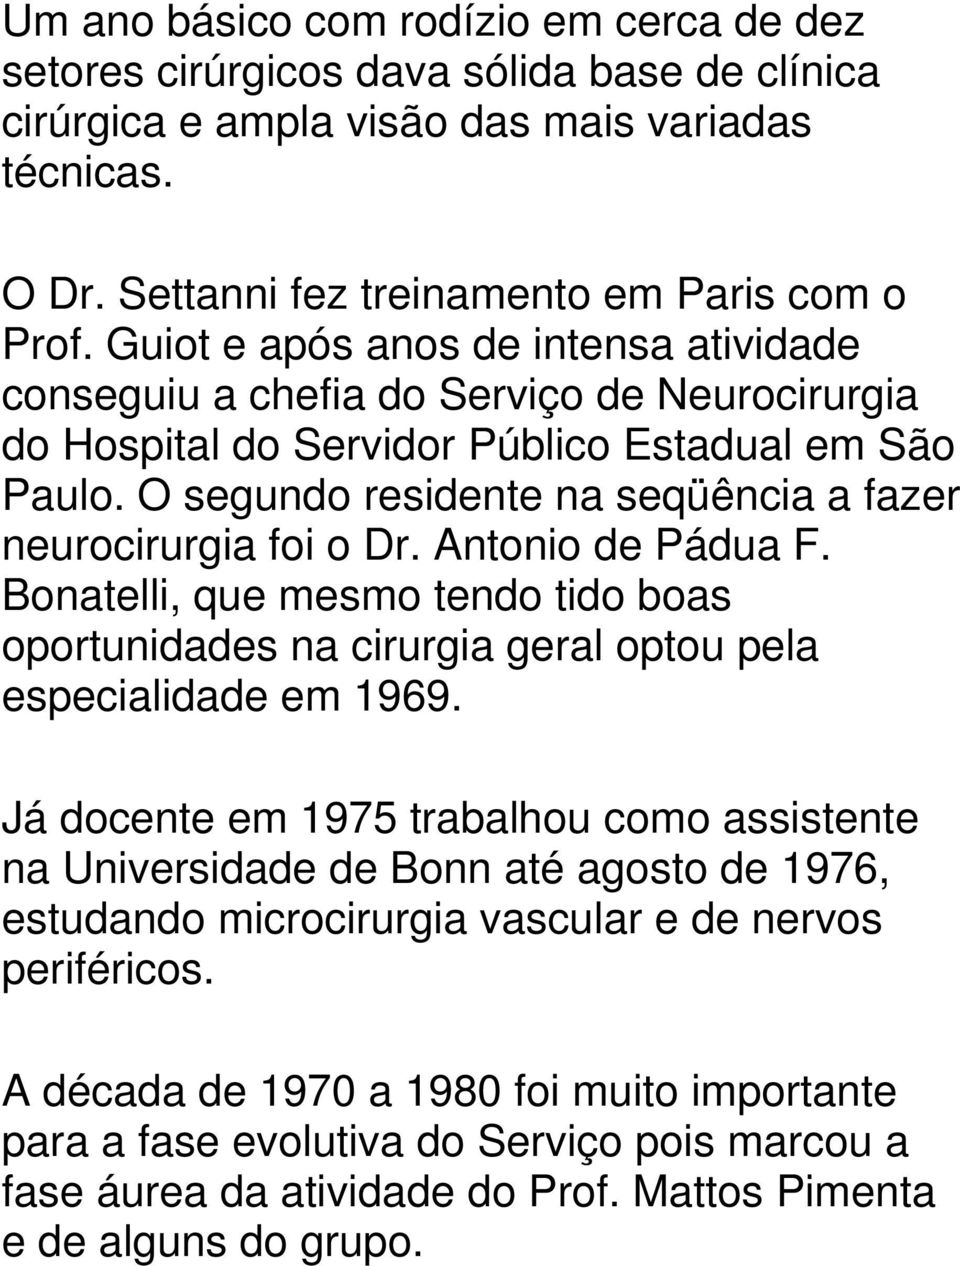 O segundo residente na seqüência a fazer neurocirurgia foi o Dr. Antonio de Pádua F. Bonatelli, que mesmo tendo tido boas oportunidades na cirurgia geral optou pela especialidade em 1969.